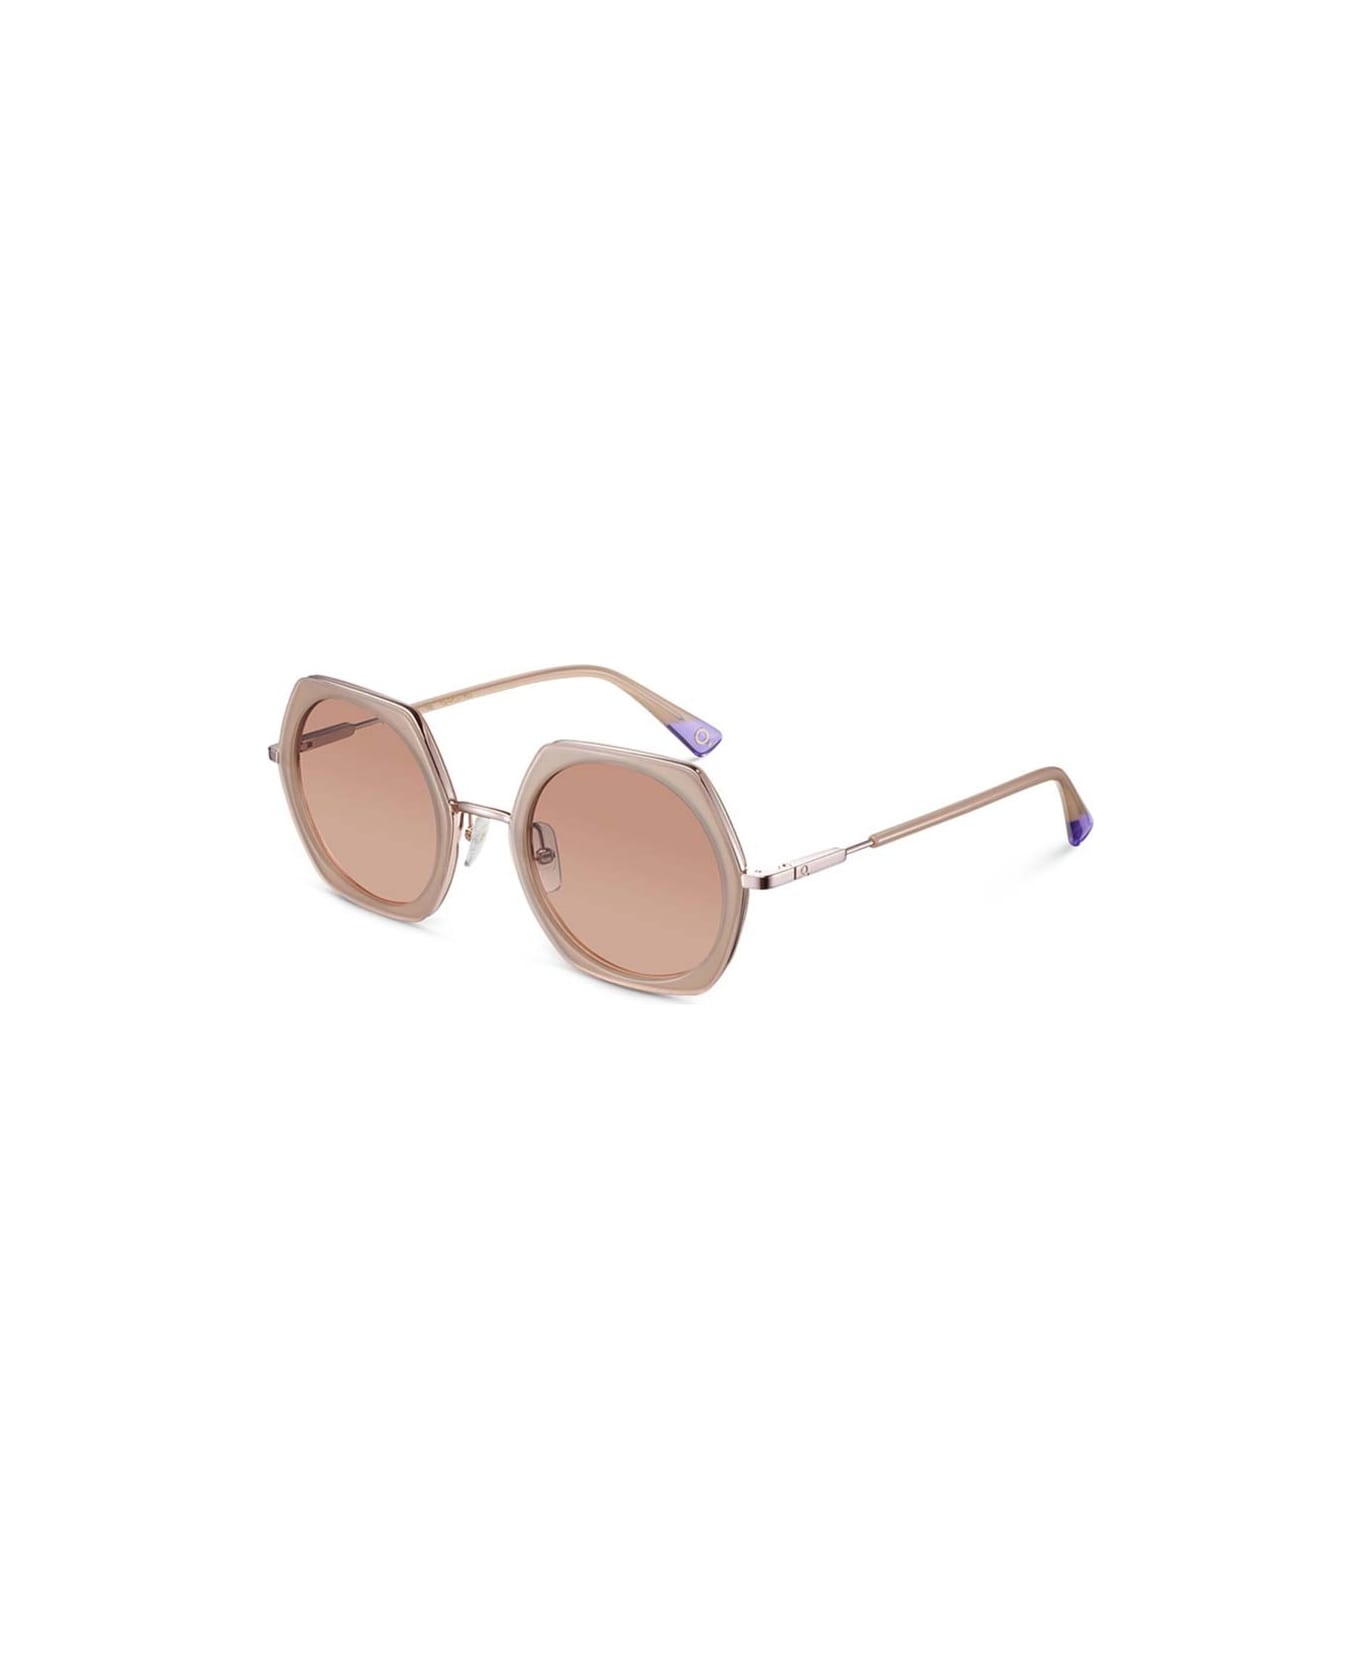 Etnia Barcelona Sunglasses - Cipria/Marrone サングラス